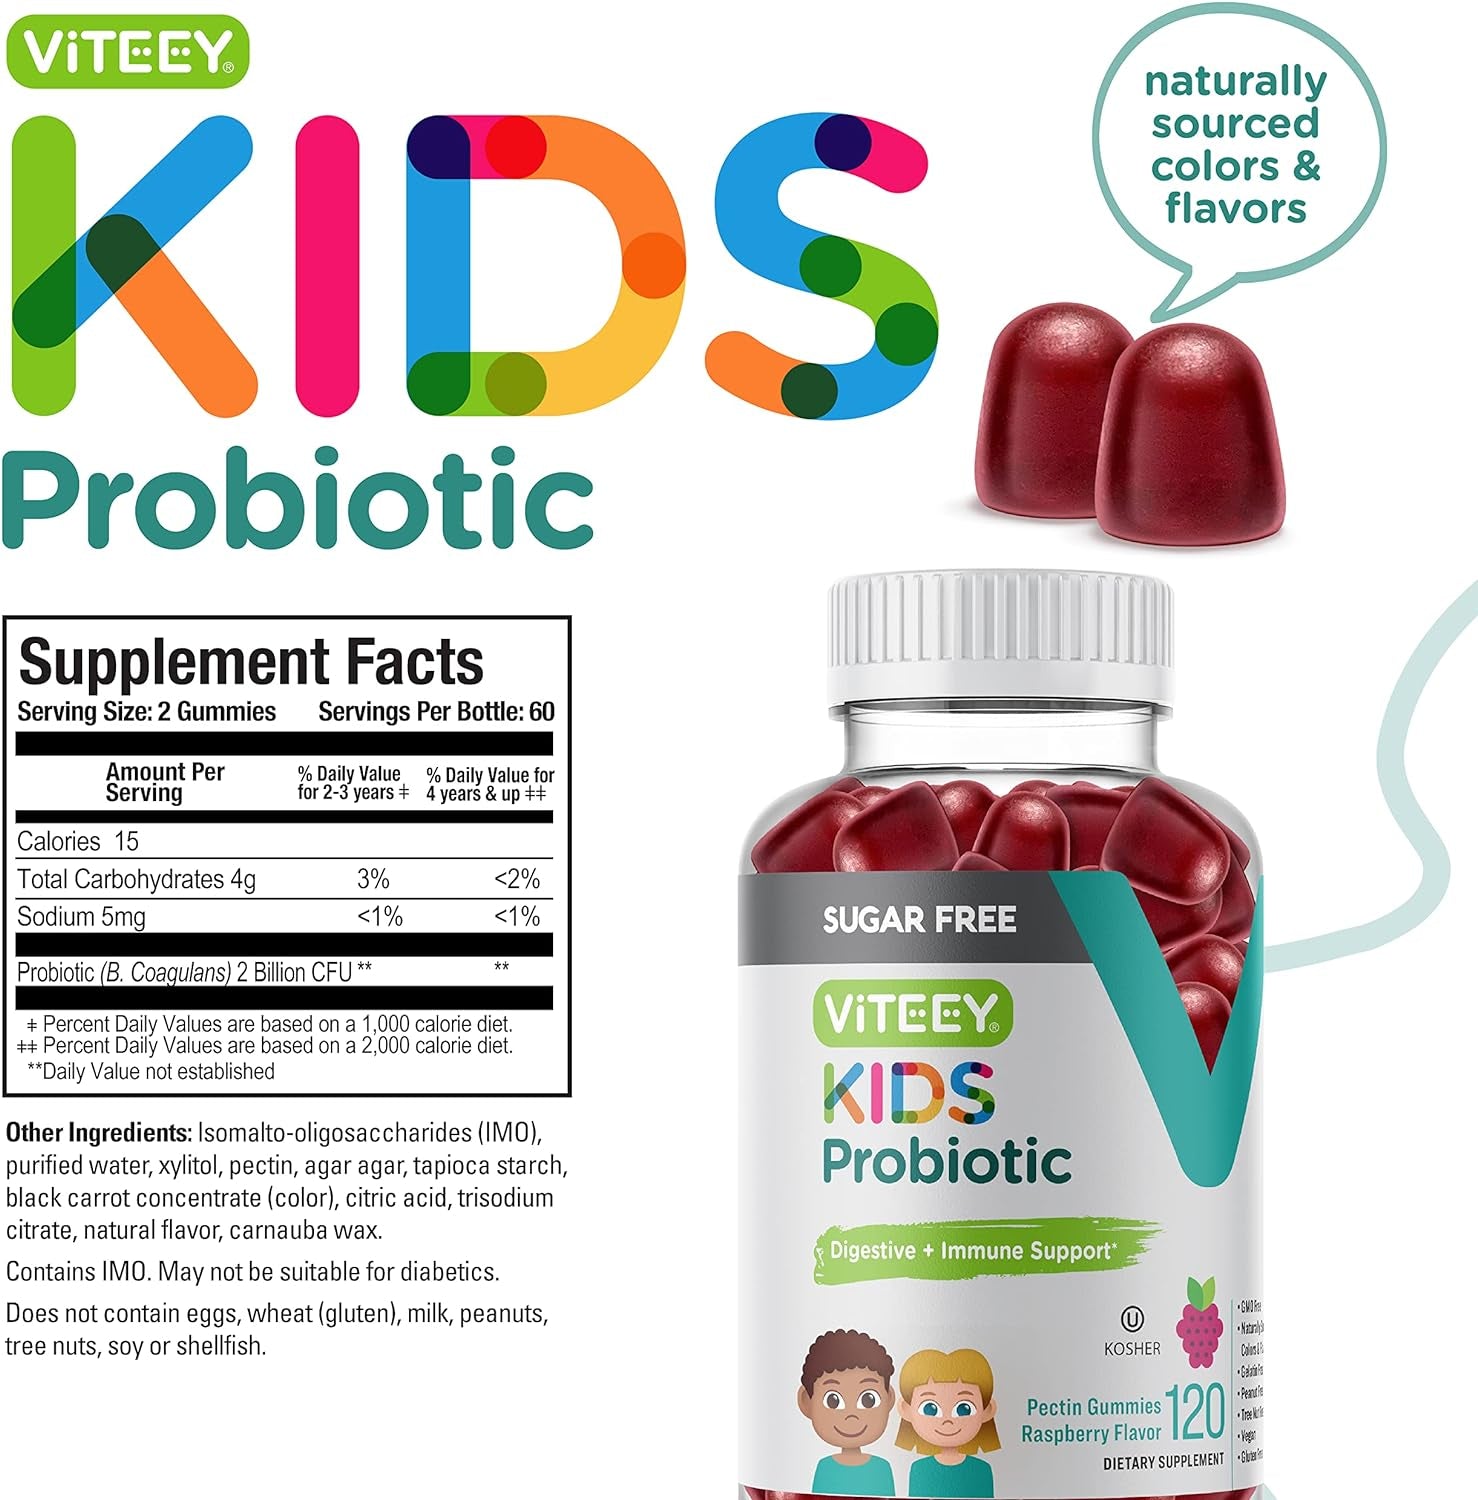 Probiotic Gummies for Kids - Sugar Free - 2 Billion CFU Probiotics for Immune Support & Digestive Support - Vegan, Non GMO, Gluten Free, Kosher - Tasty, Soft, & Chewable Raspberry Flavored Gummy